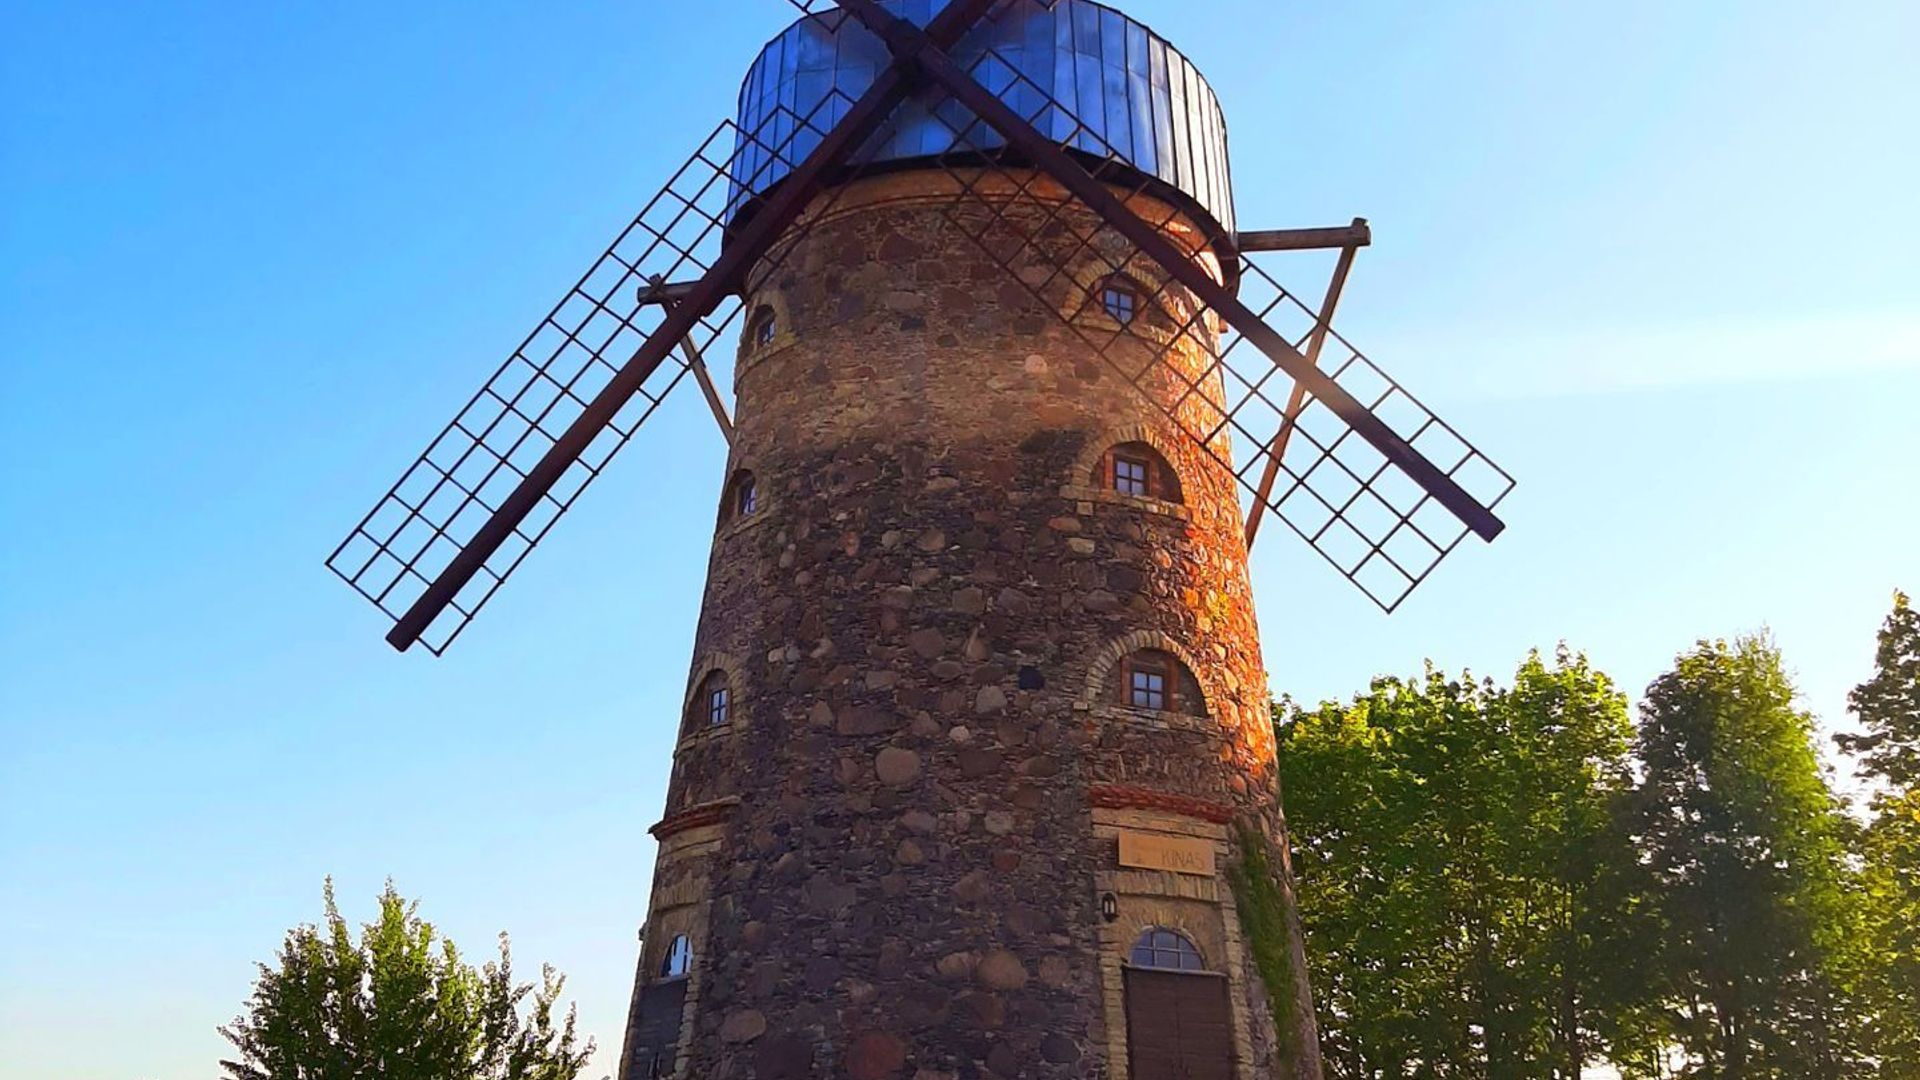 Pakruojis Manor Windmill